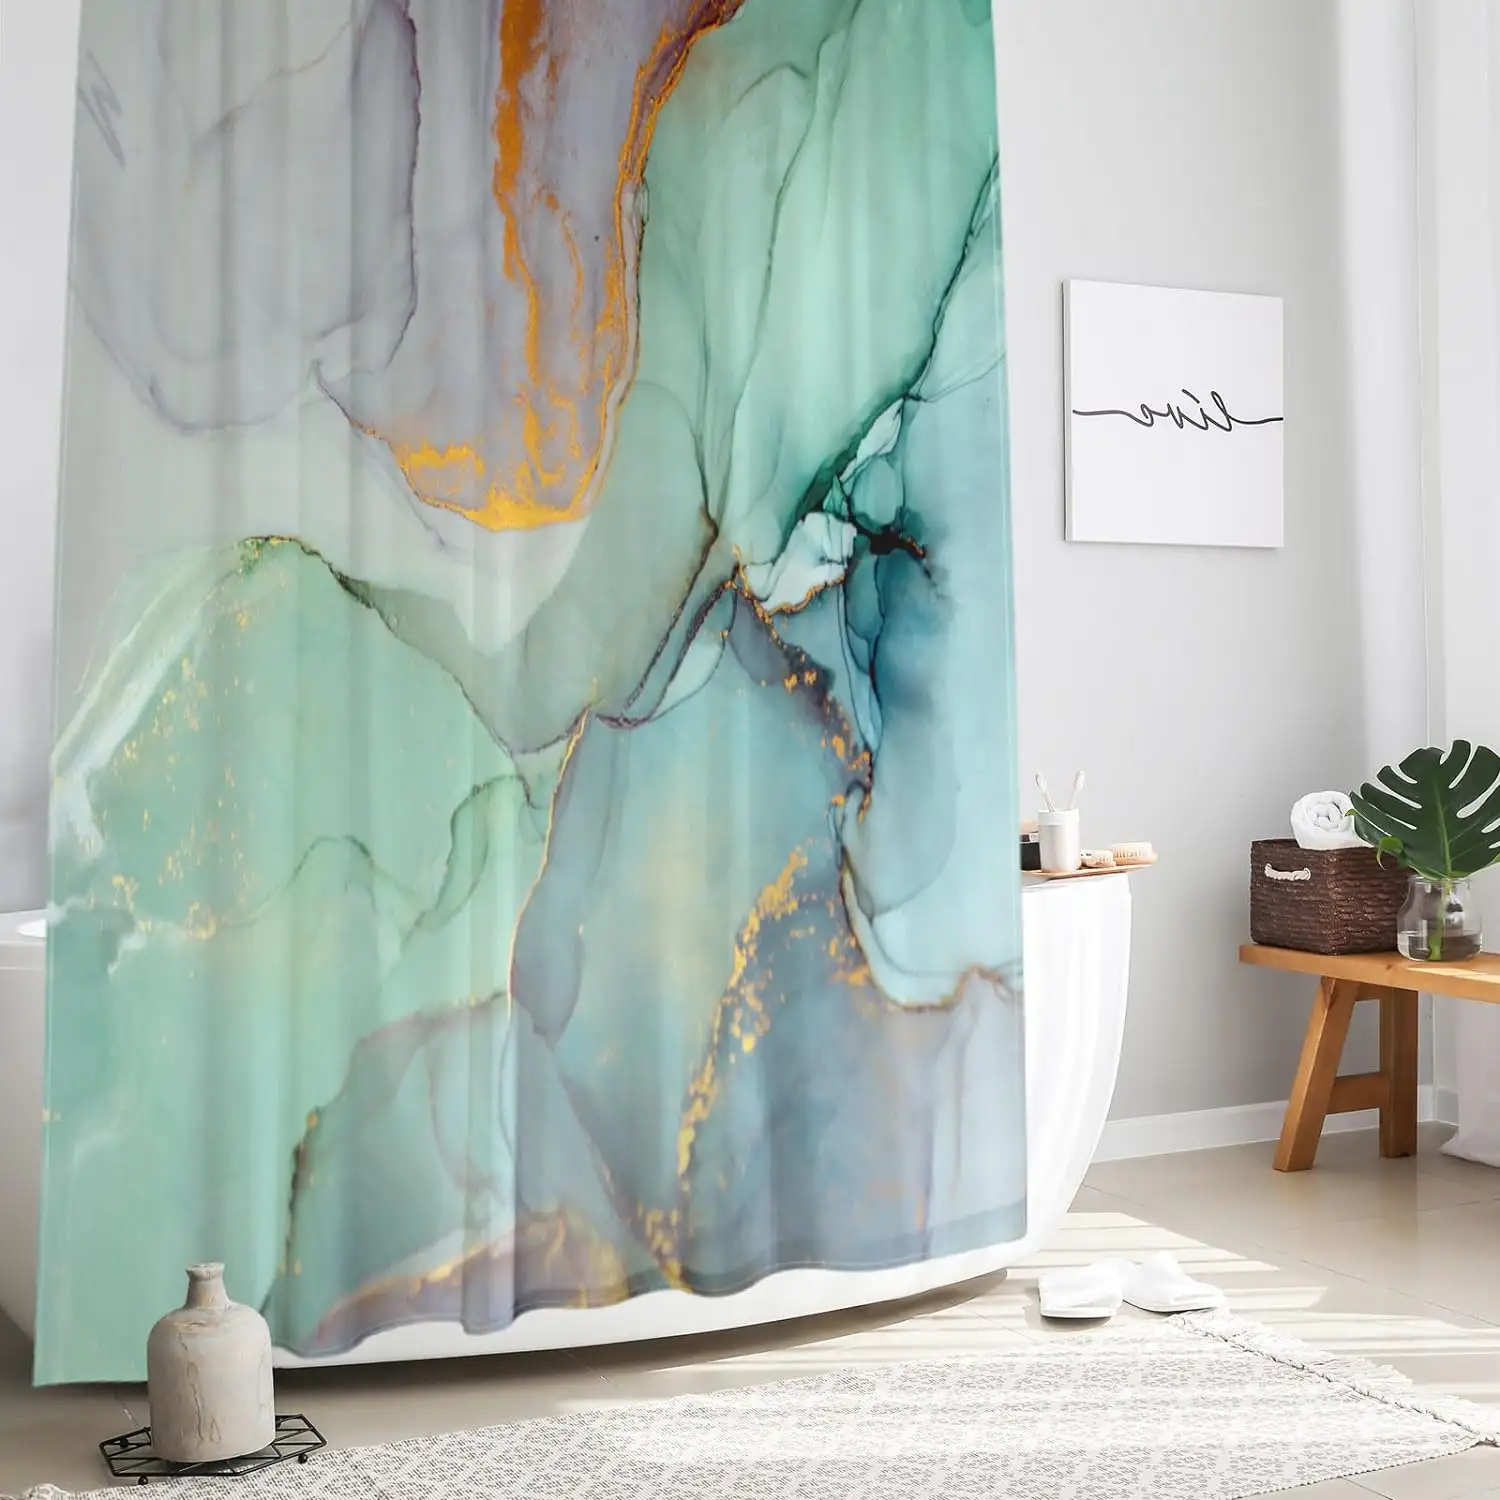 カラフルな大理石のシャワーカーテン抽象的な翡翠テクスチャオンブルモダンインクアートの装飾バスルーム用防水ファブリックシャワーカーテン